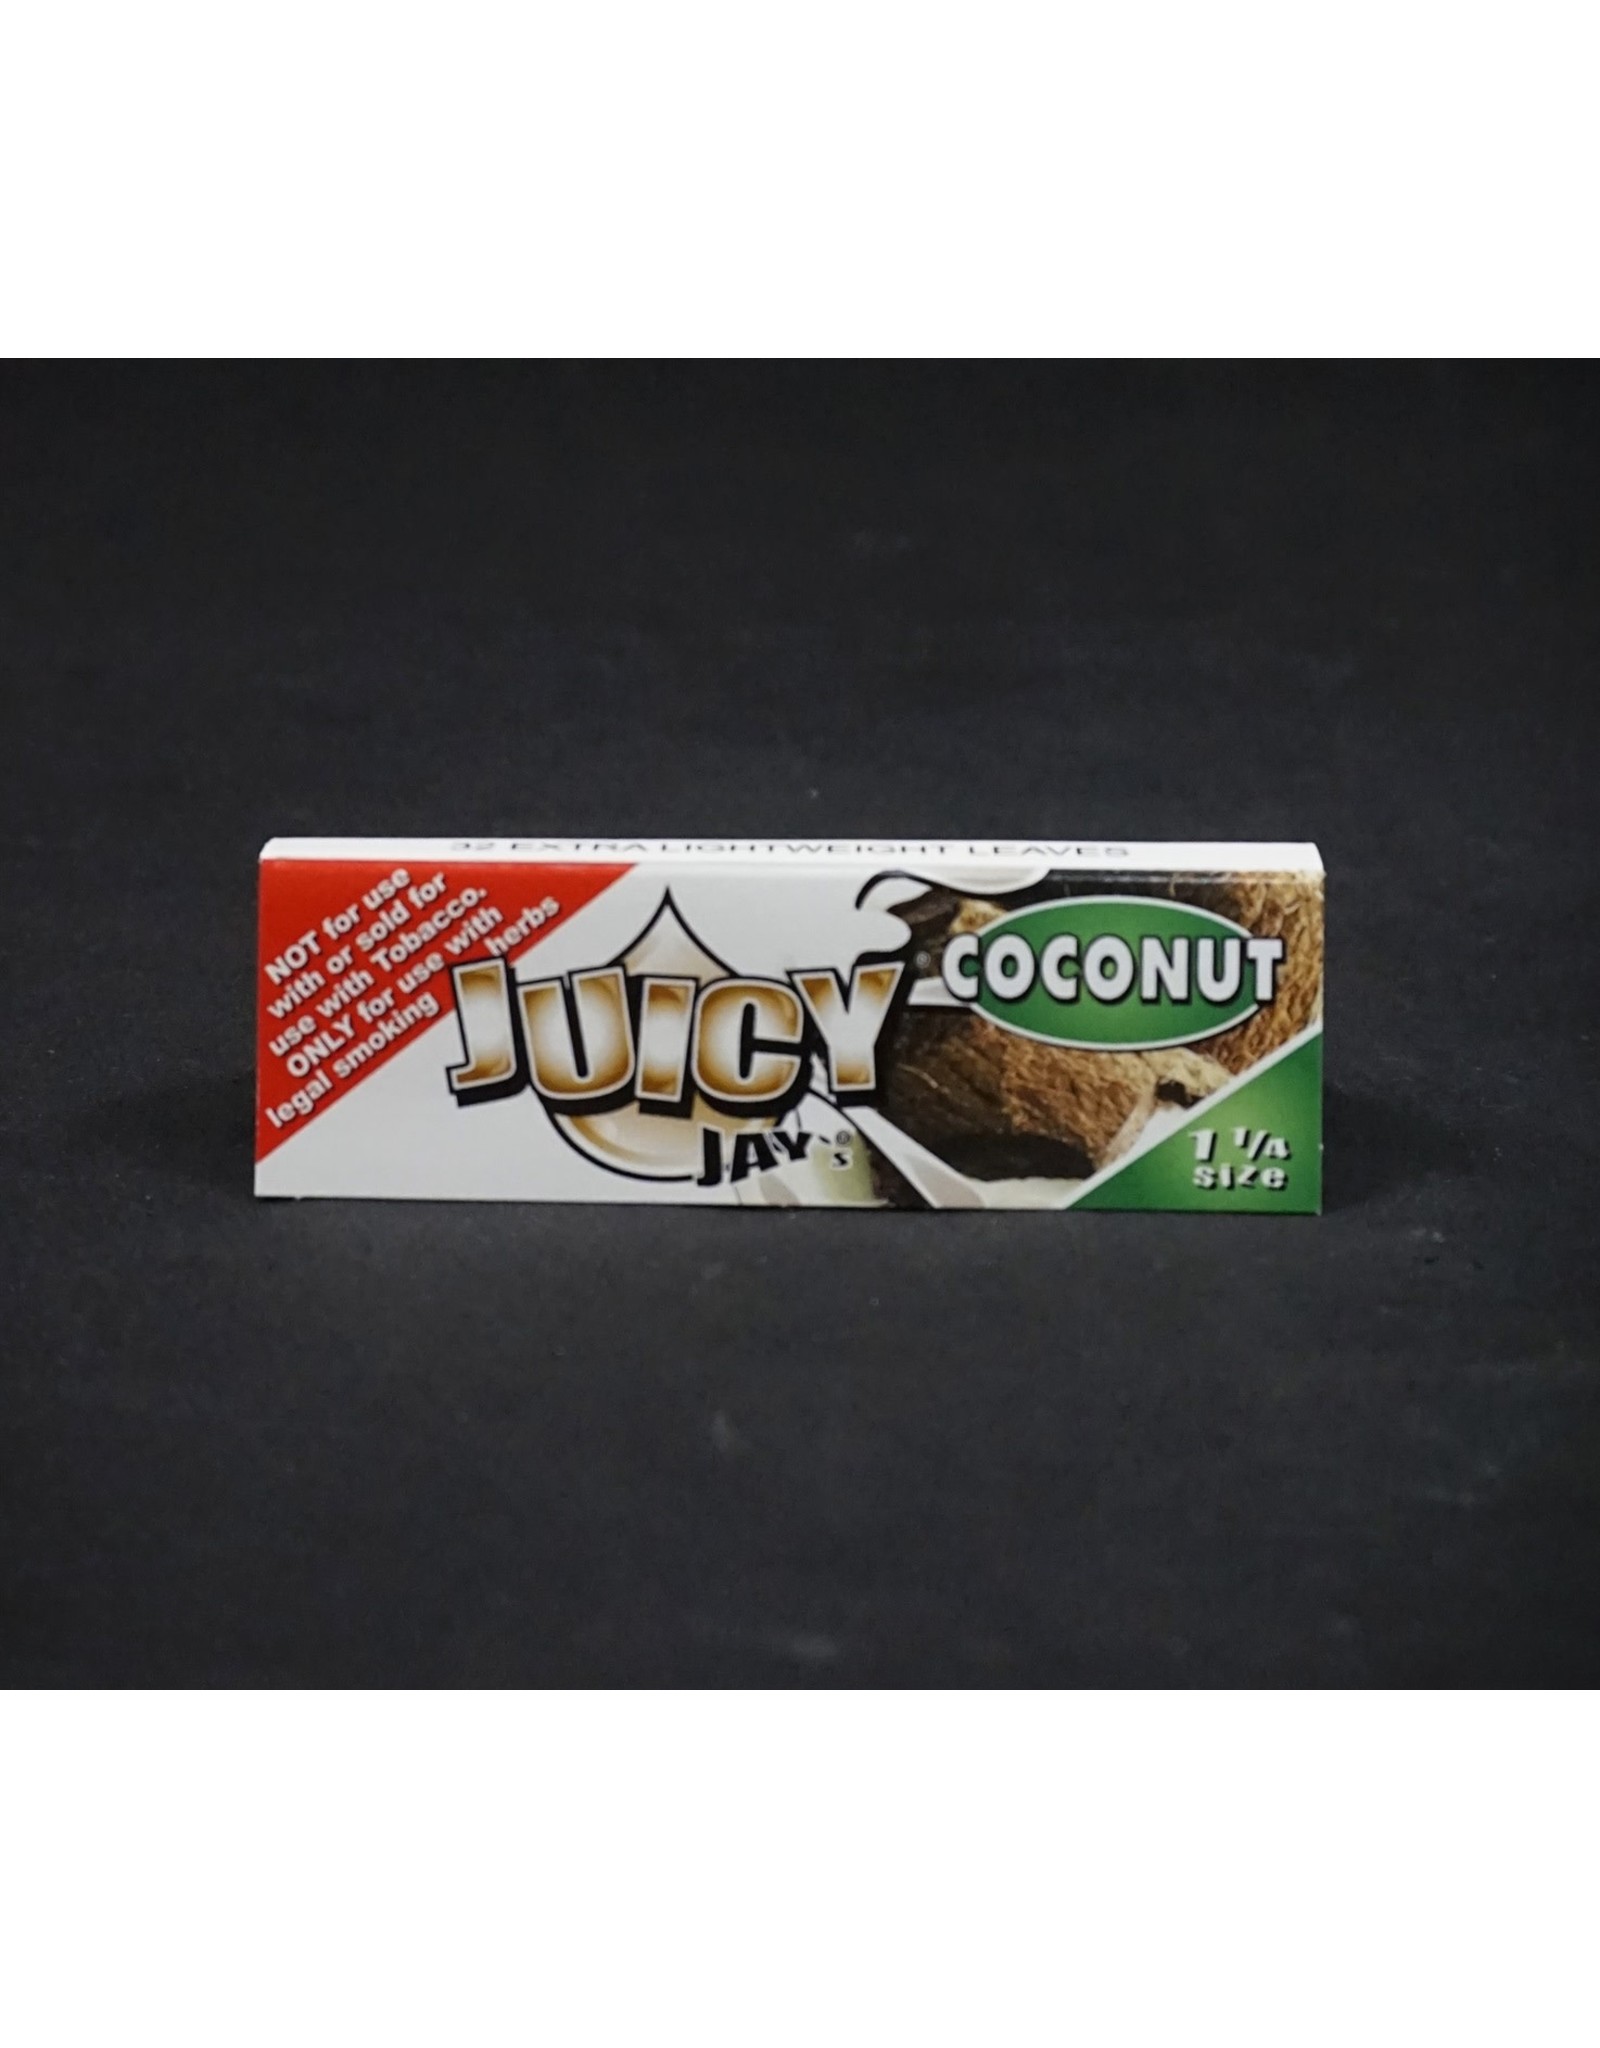 Juicy Jay's Juicy Jay's Coconut